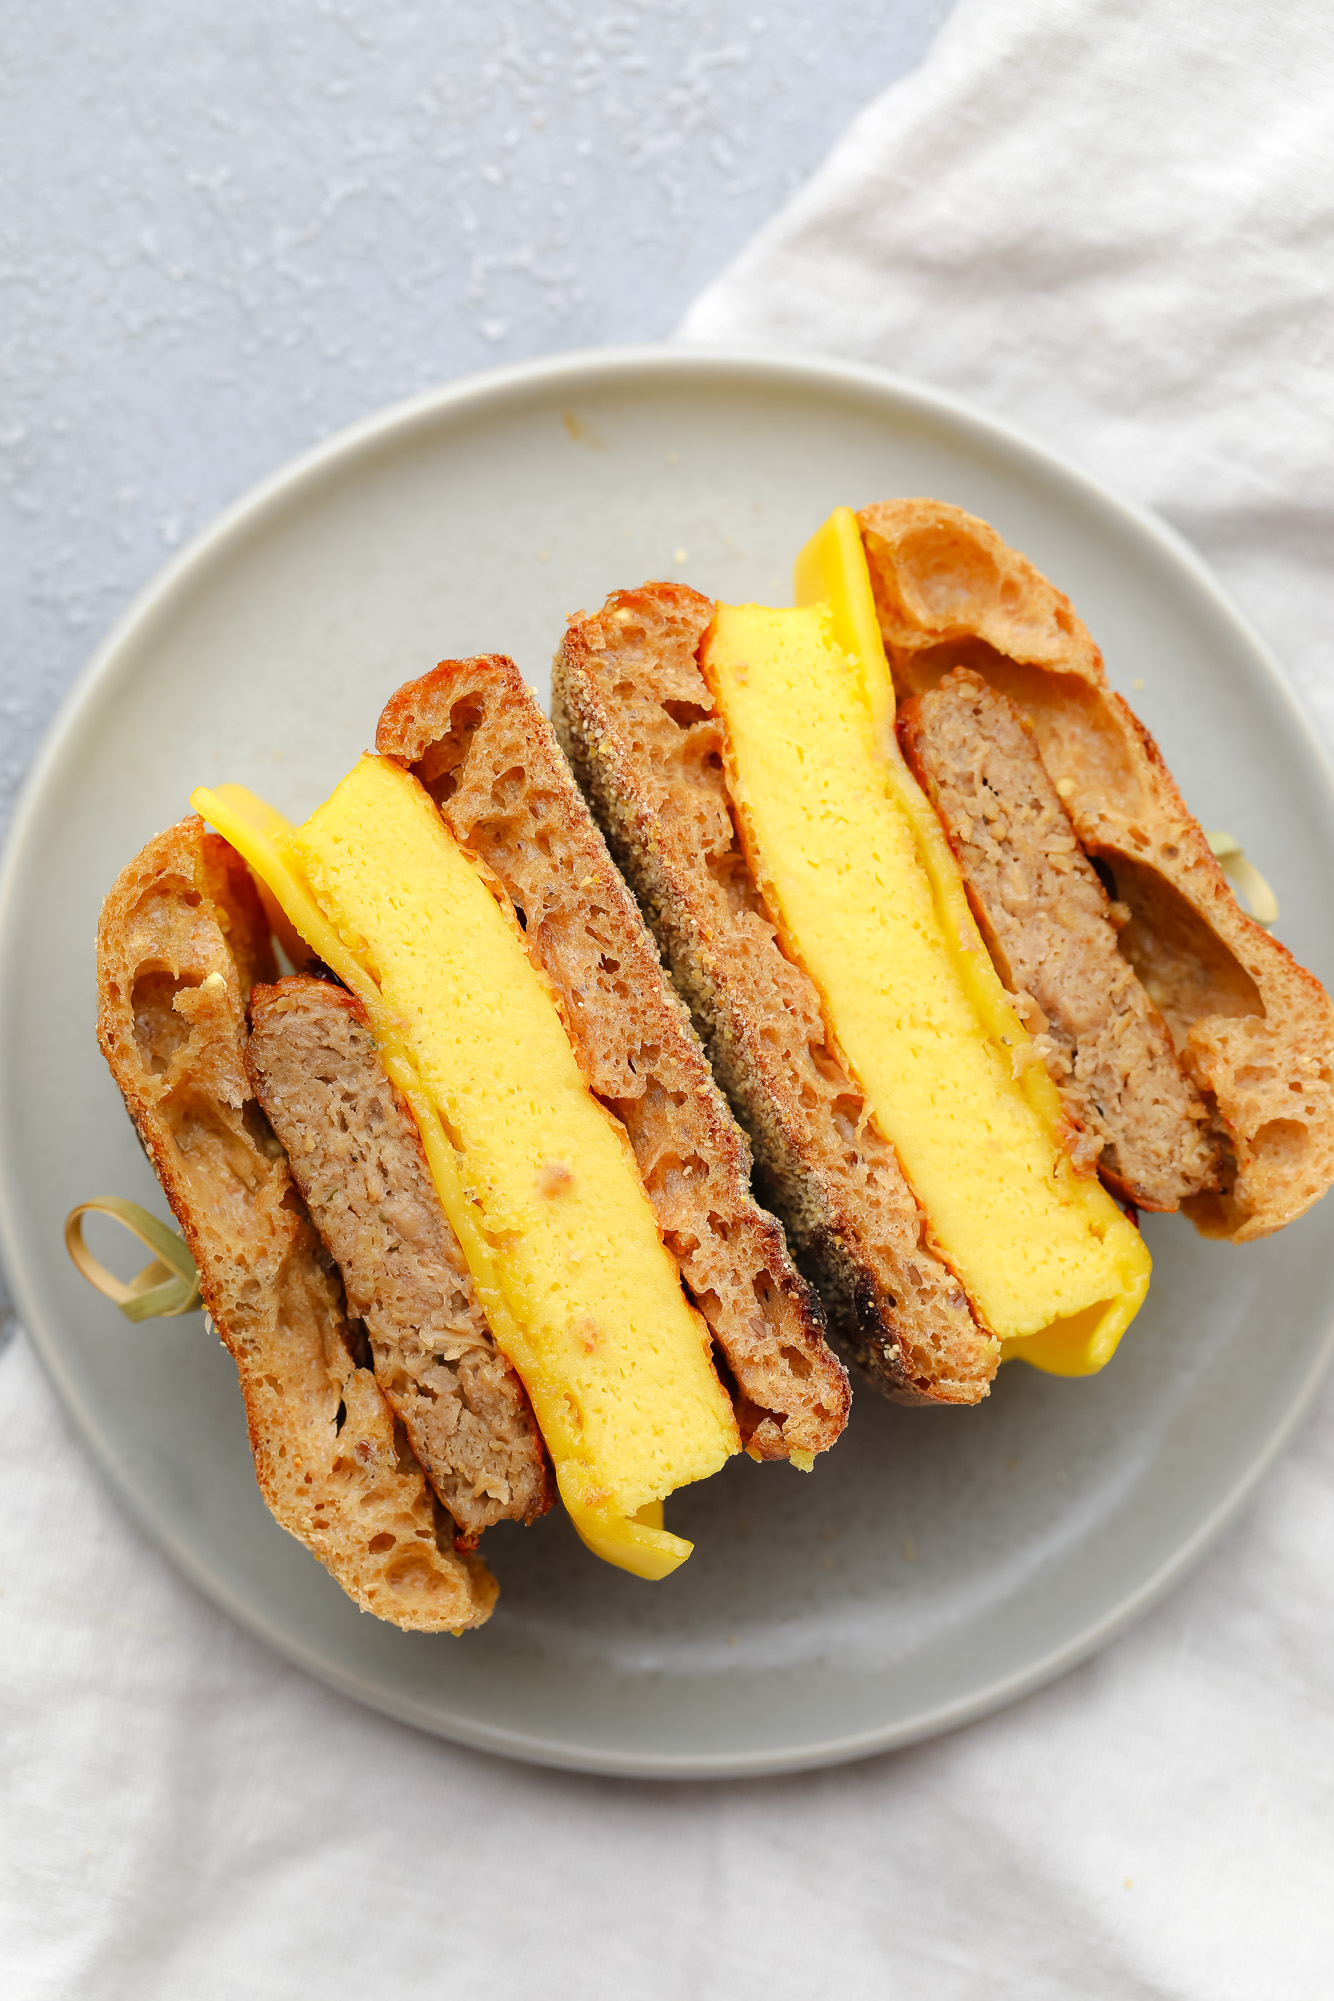 a vegan breakfast sandwich cut in half on a grey plate.